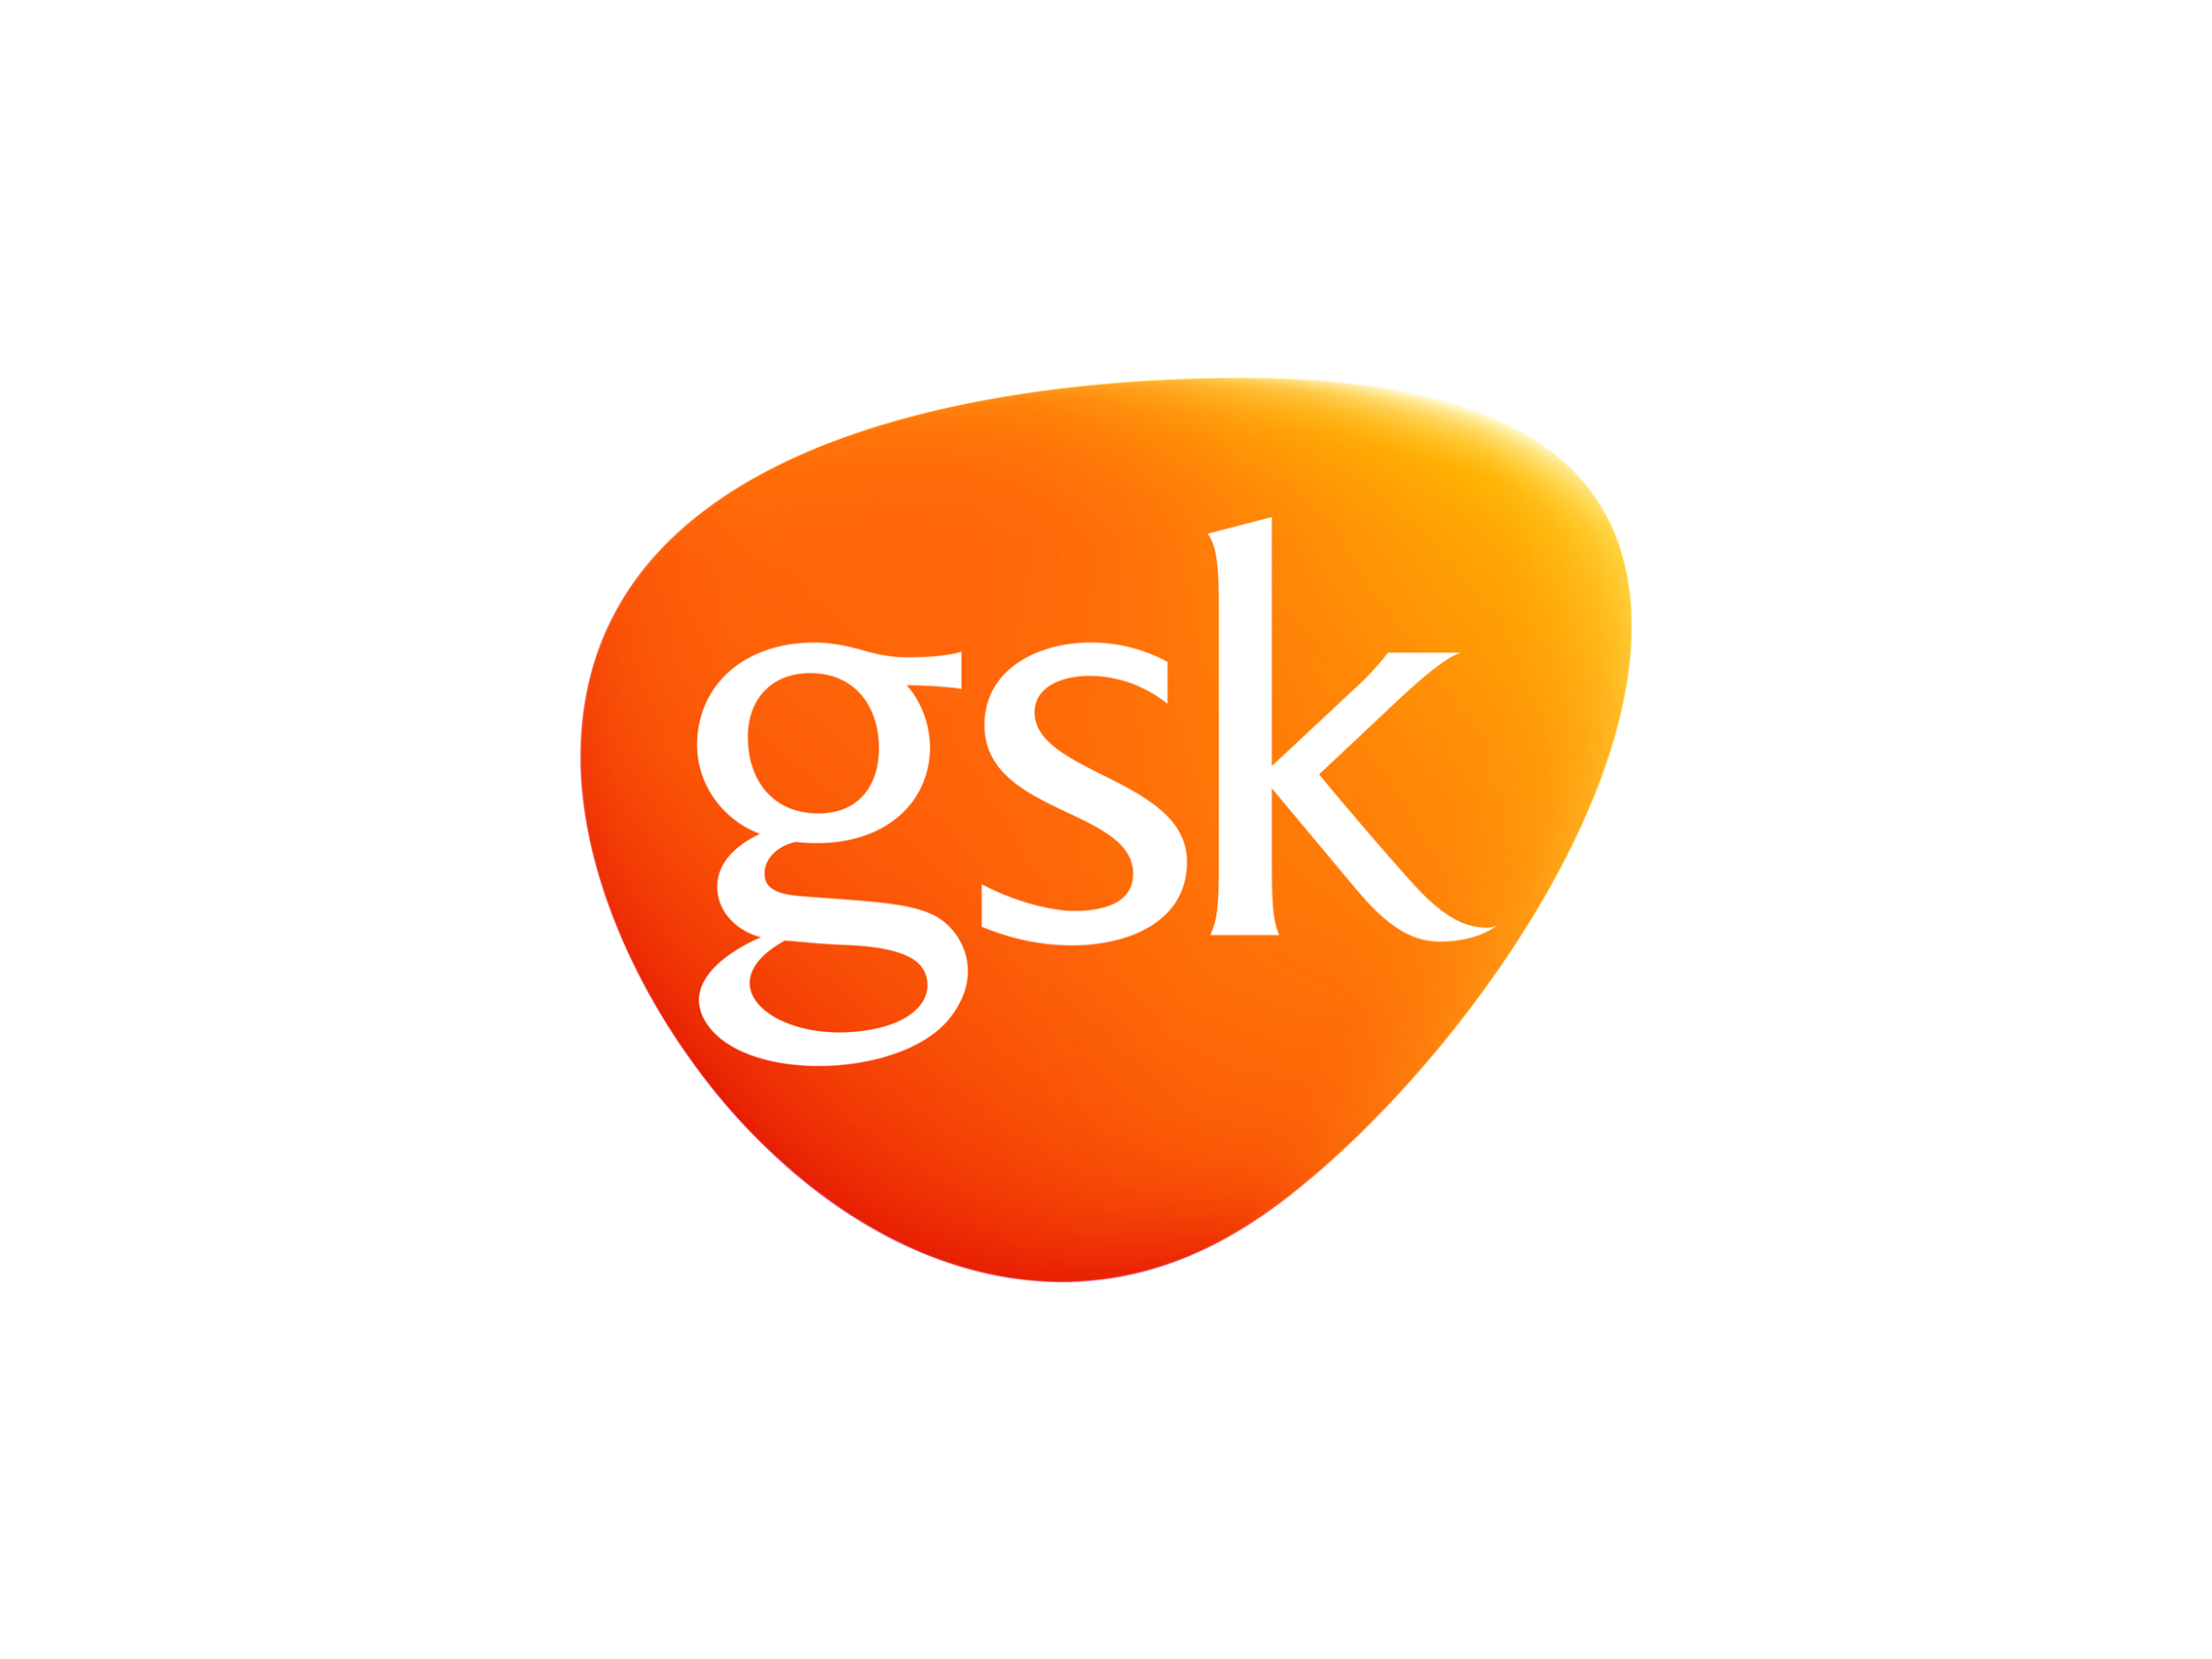 Logo Gsk PNG - 29869